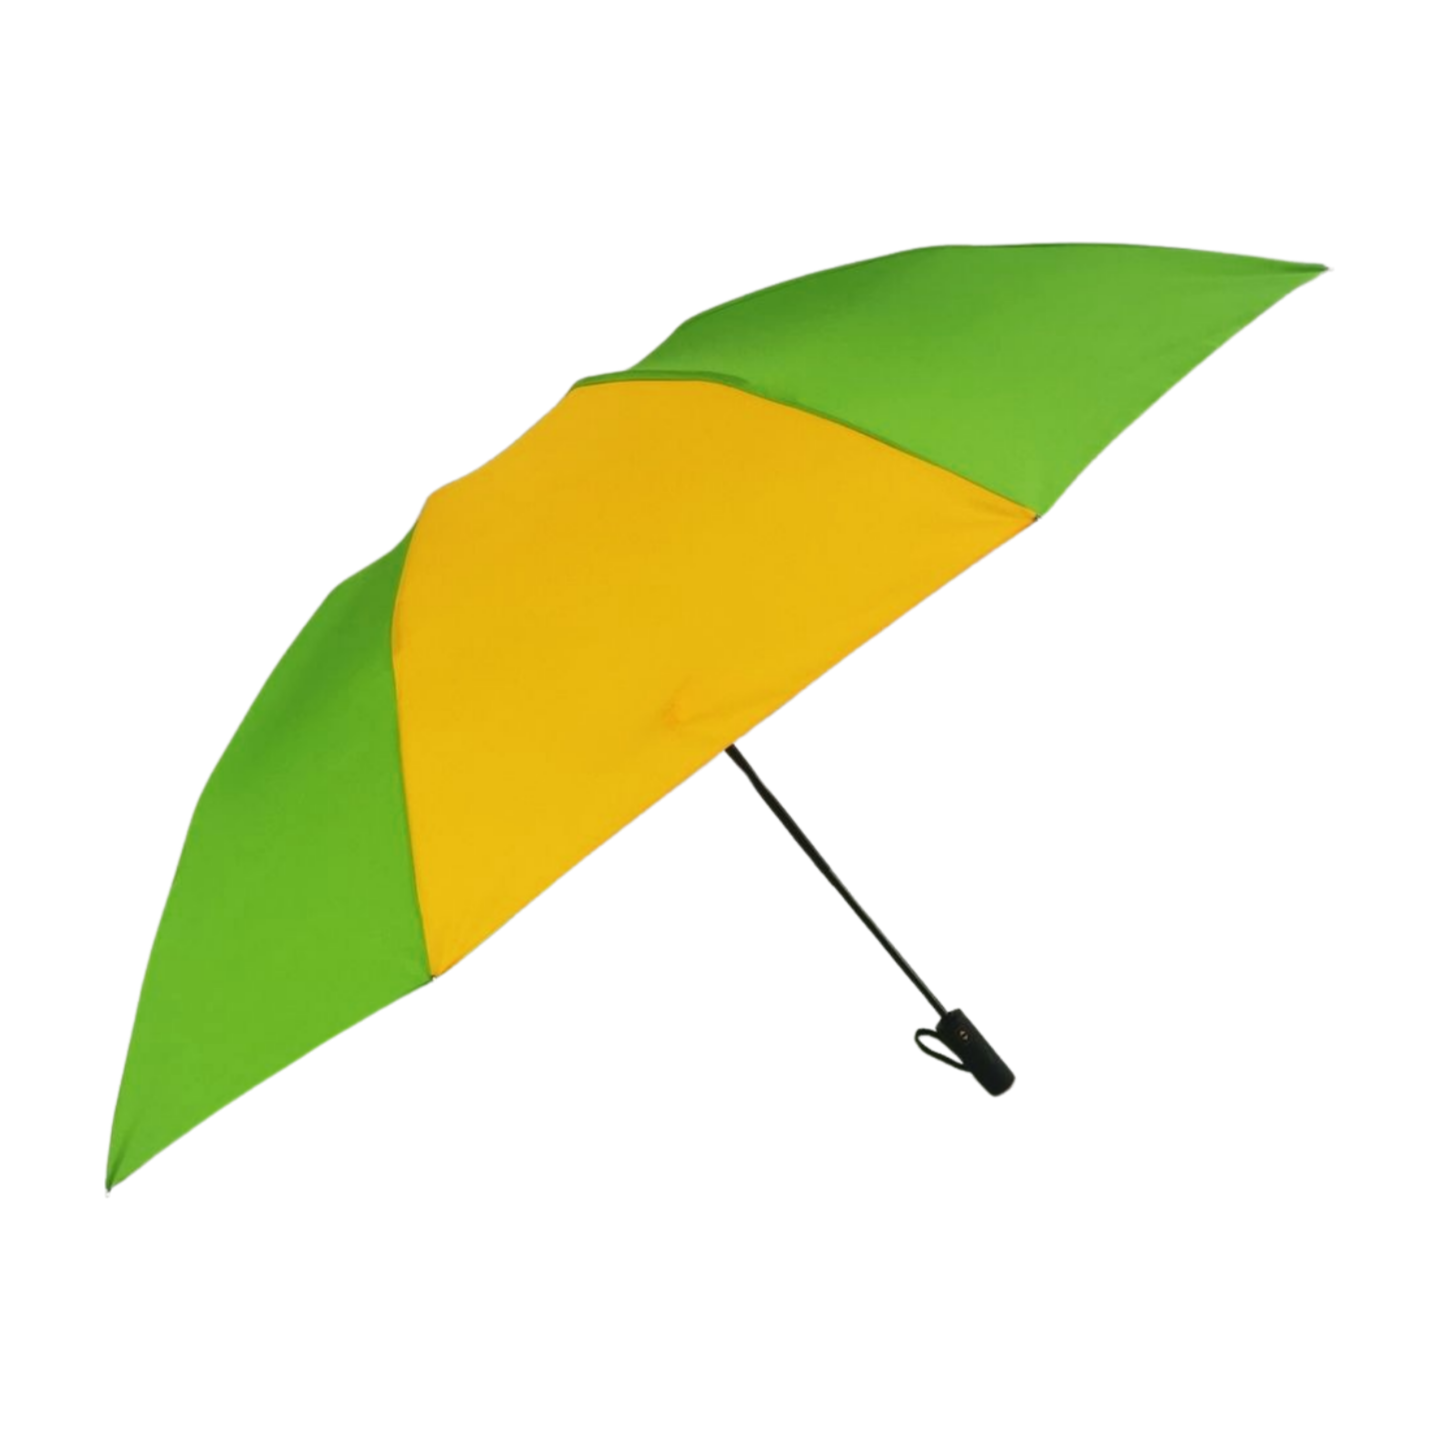 https://www.hodaumbrella.com/huge-size-reve…lding-umbrella-product/